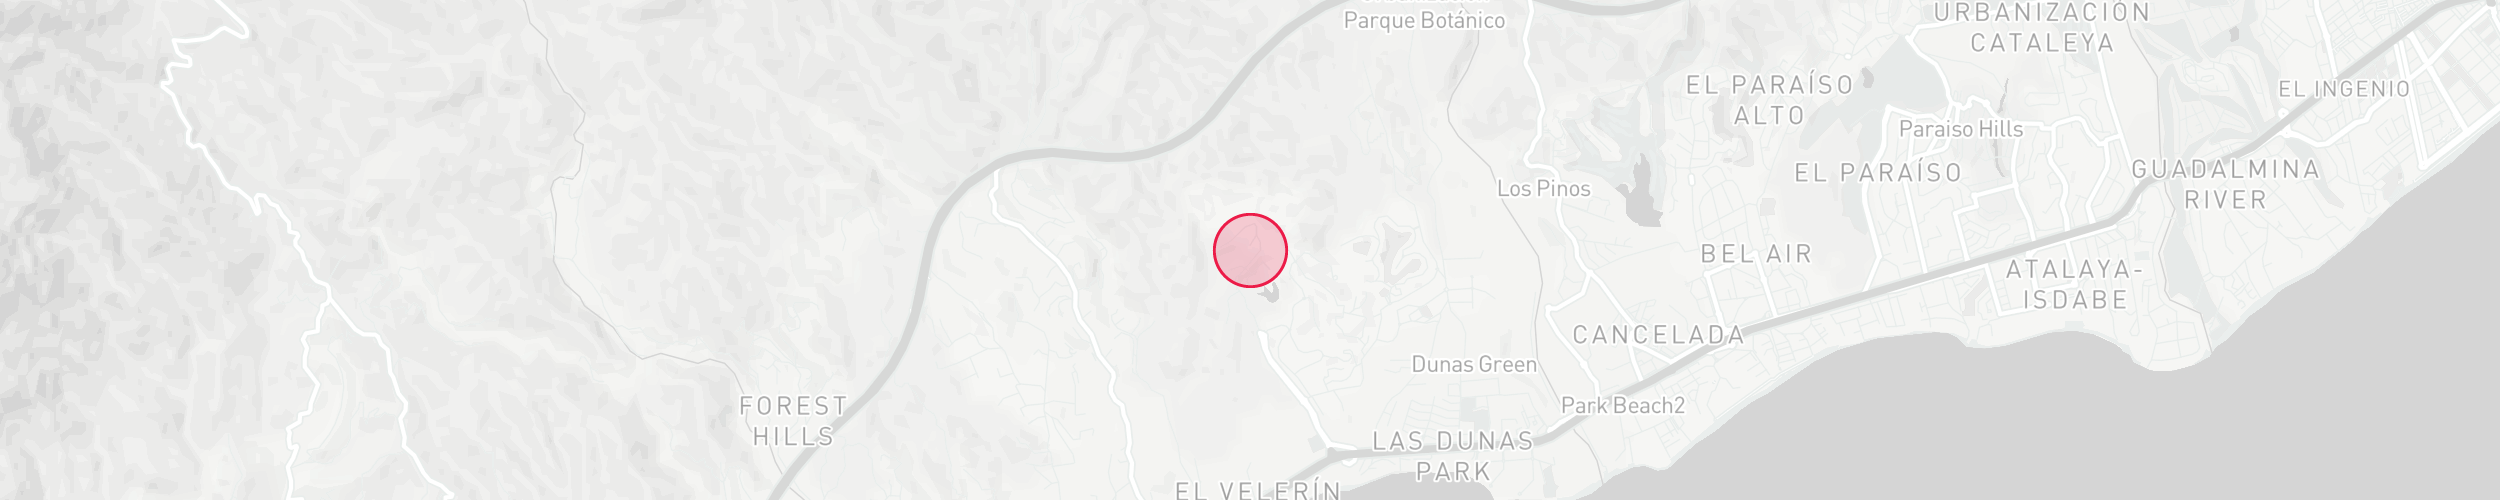 Mapa de localización de la propiedad - La Panera